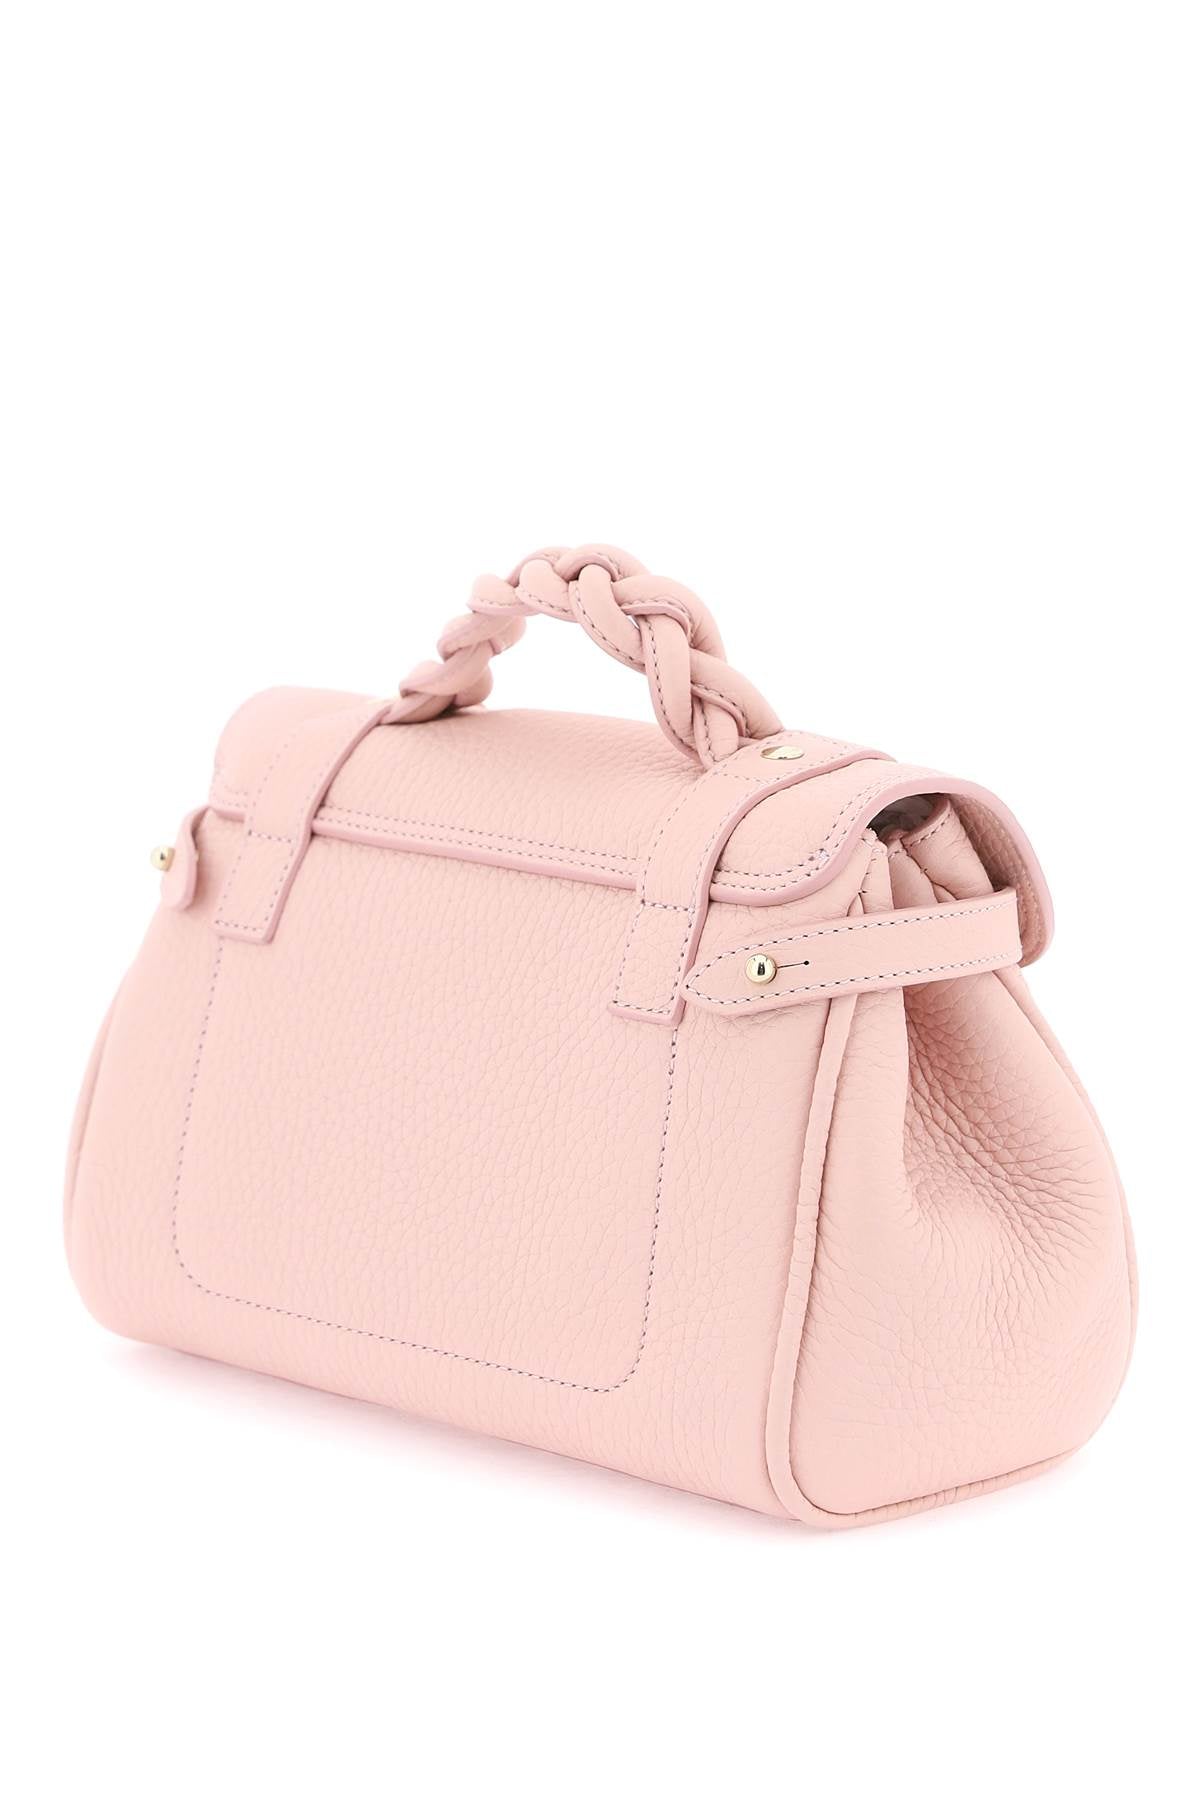 Túi xách nhỏ thời trang màu hồng cho phụ nữ